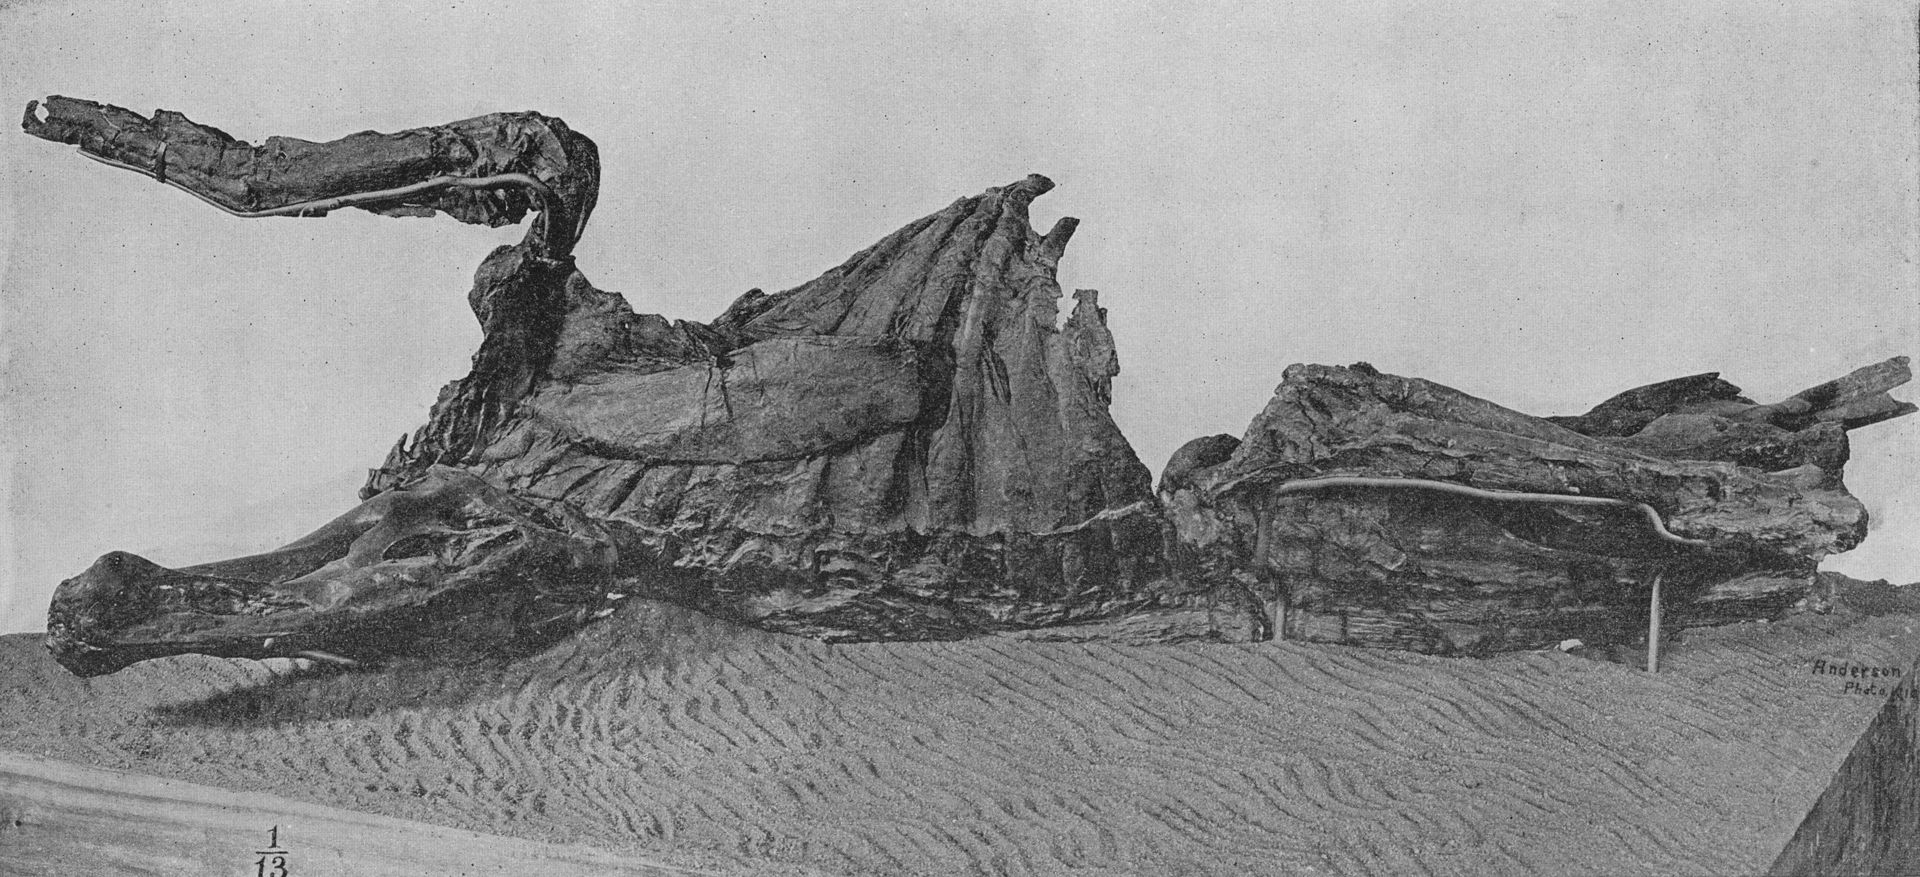 美国发现长了马蹄子的恐龙木乃伊